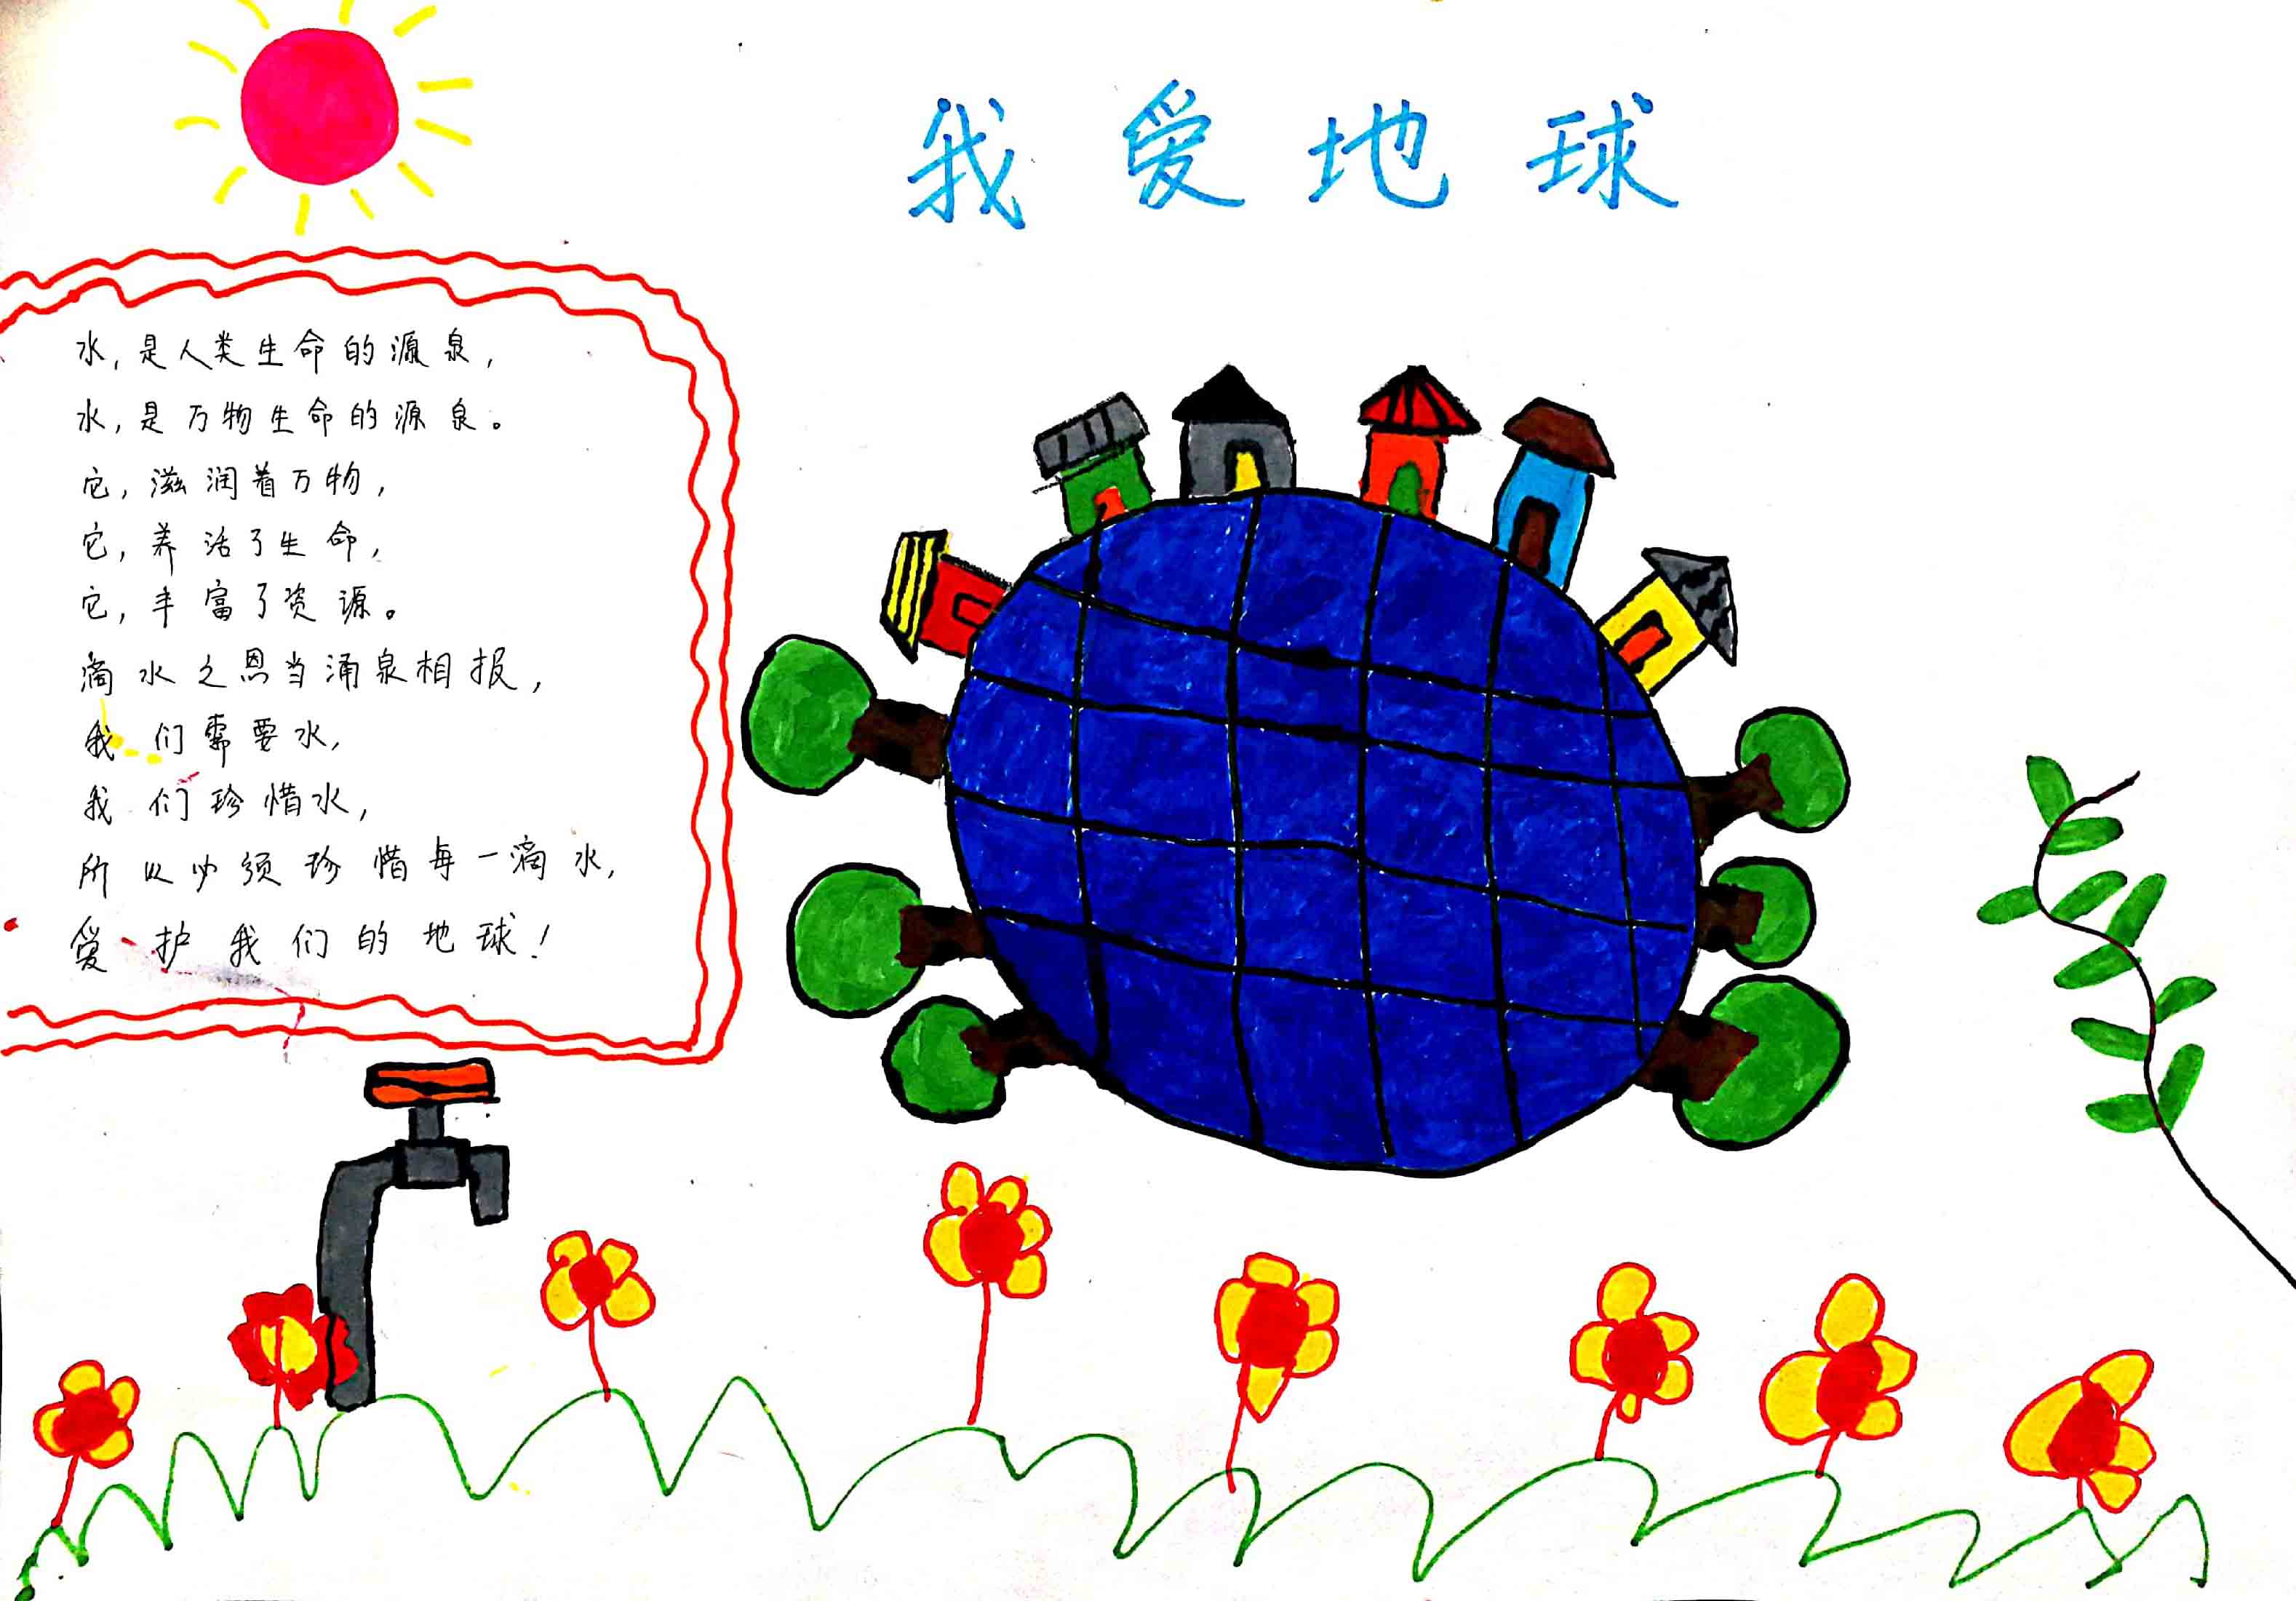 快乐儿童节，下一代龙净人的环保梦。获奖作品：《我爱地球》郑朝元 5岁